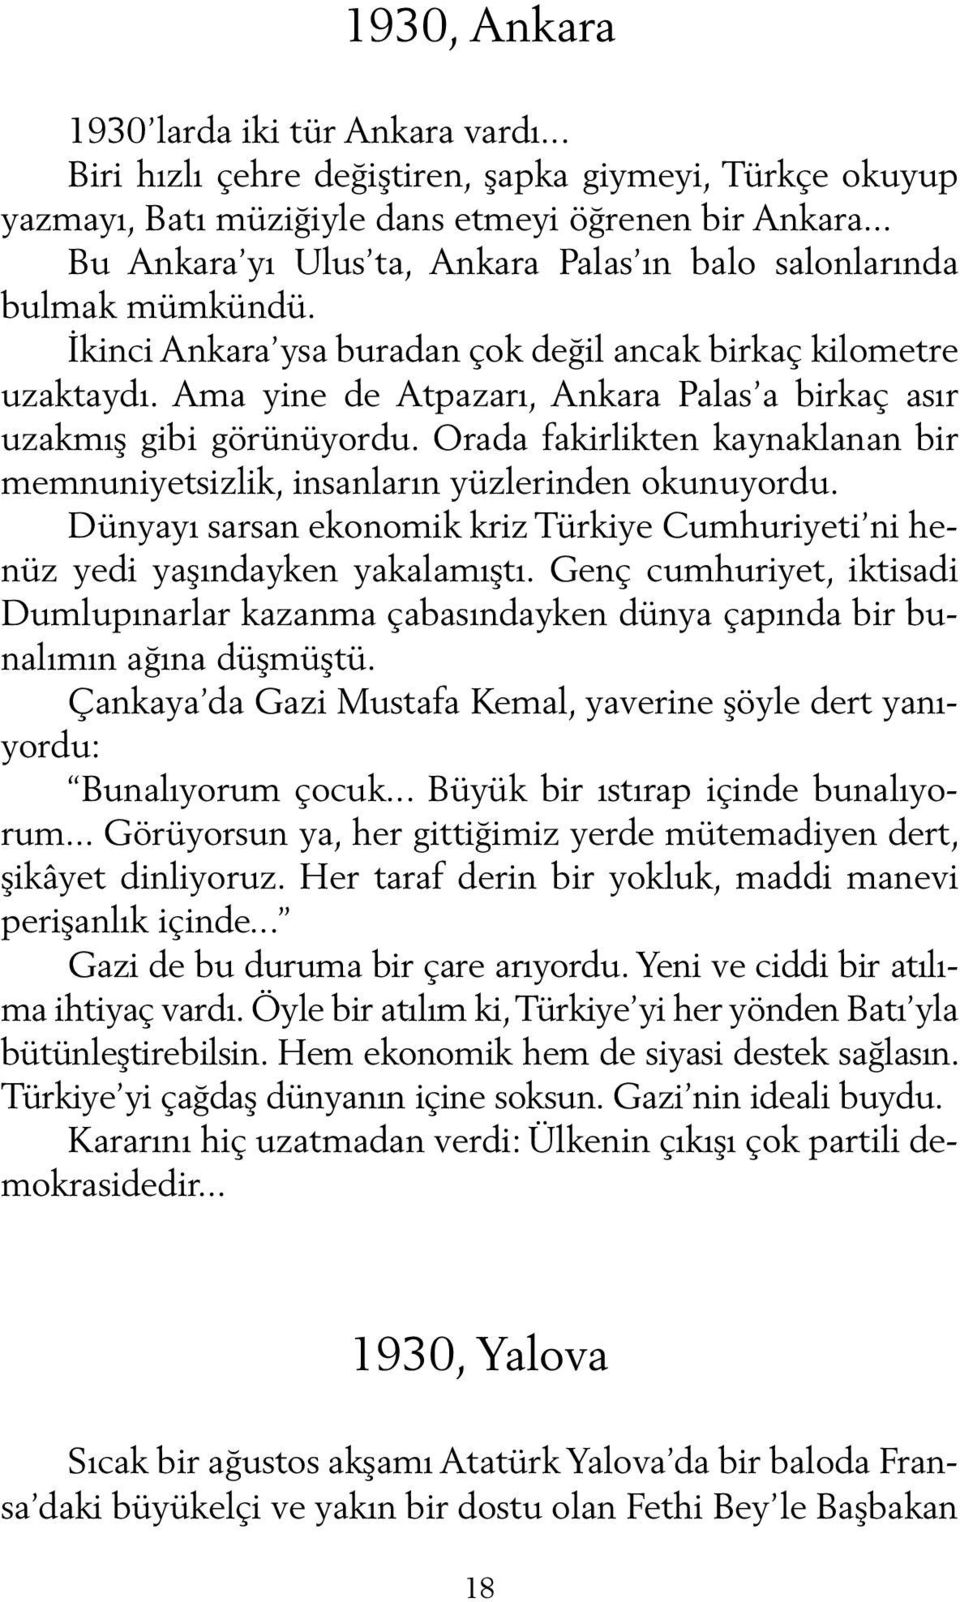 Ama yine de Atpazarı, Ankara Palas a birkaç asır uzakmış gibi görünüyordu. Orada fakirlikten kaynaklanan bir memnuniyetsizlik, insanların yüzlerinden okunuyordu.